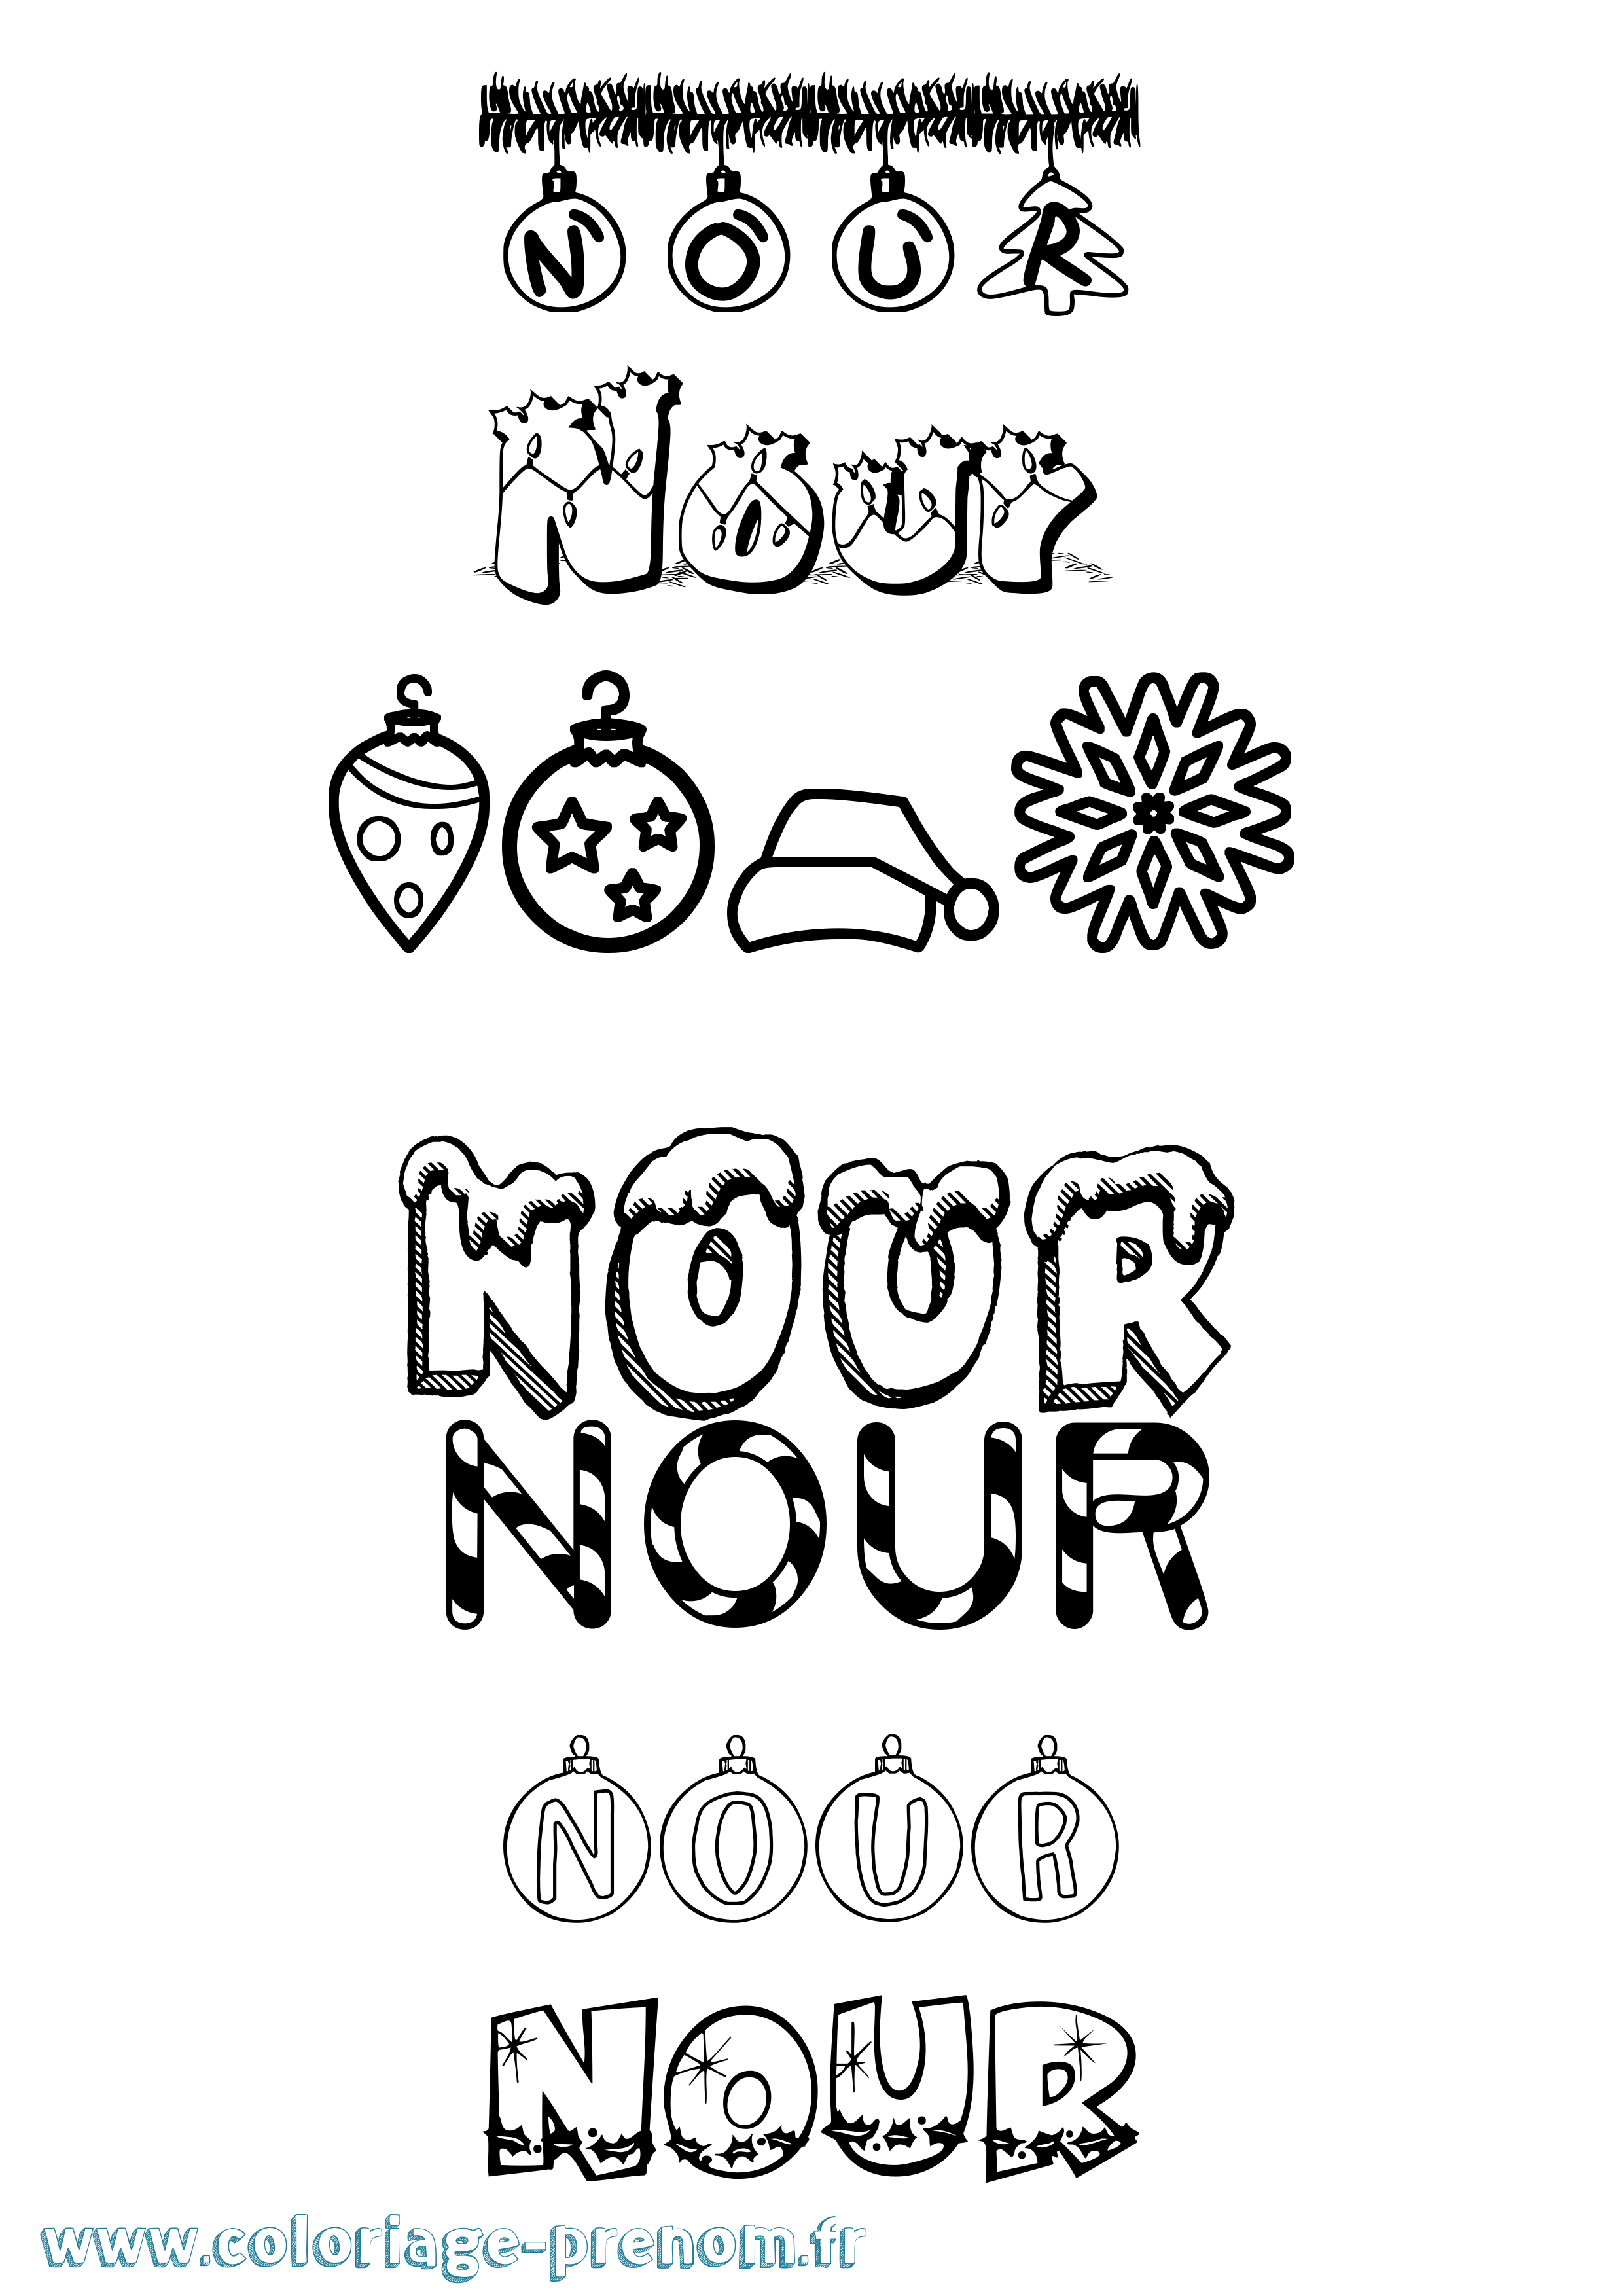 Coloriage prénom Nour